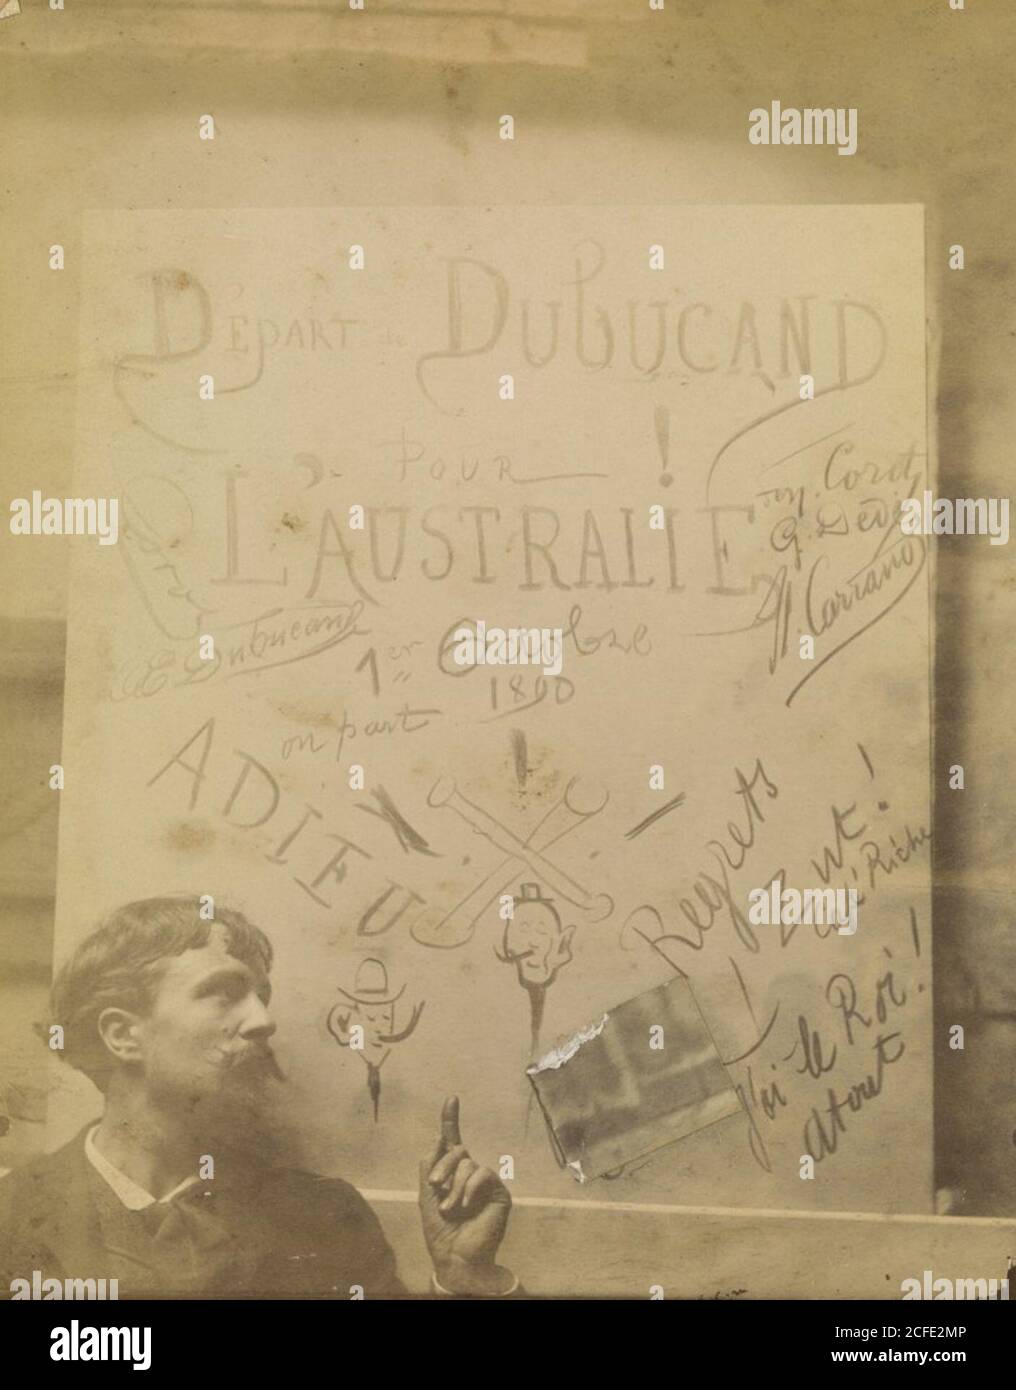 Depart Dubucand Pour L'Australie 1 er Octobre 1890 . Stock Photo